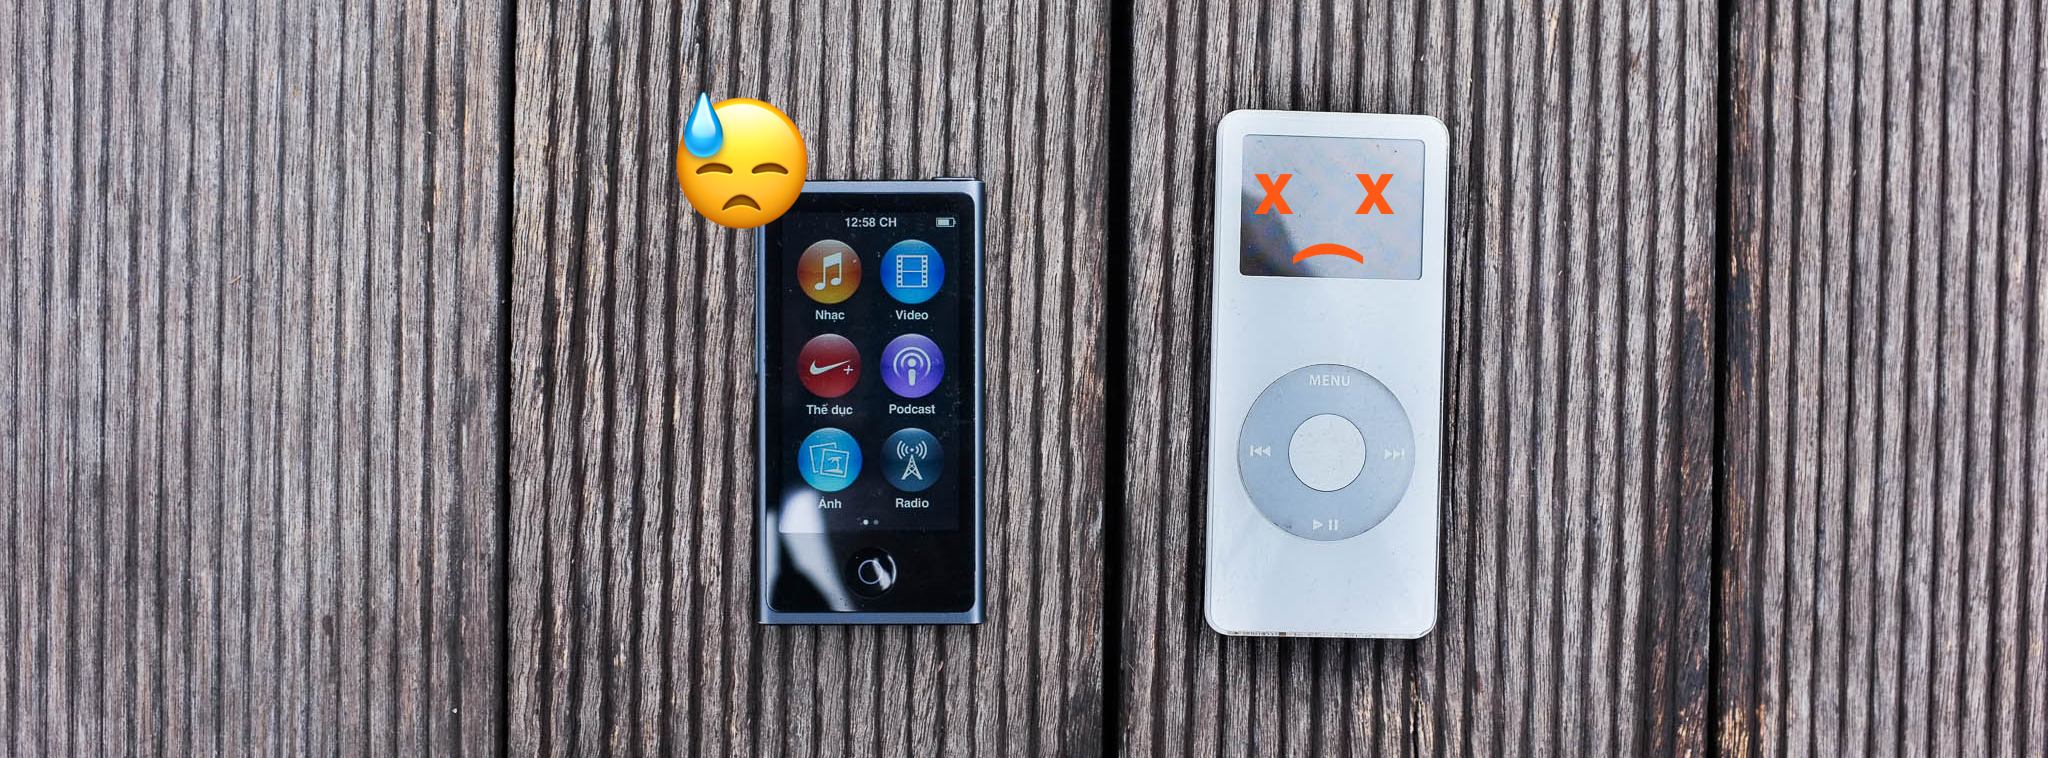 Trên tay iPod nano đời cuối cùng: Khép lại vòng đời một máy nghe nhạc nhỏ xinh